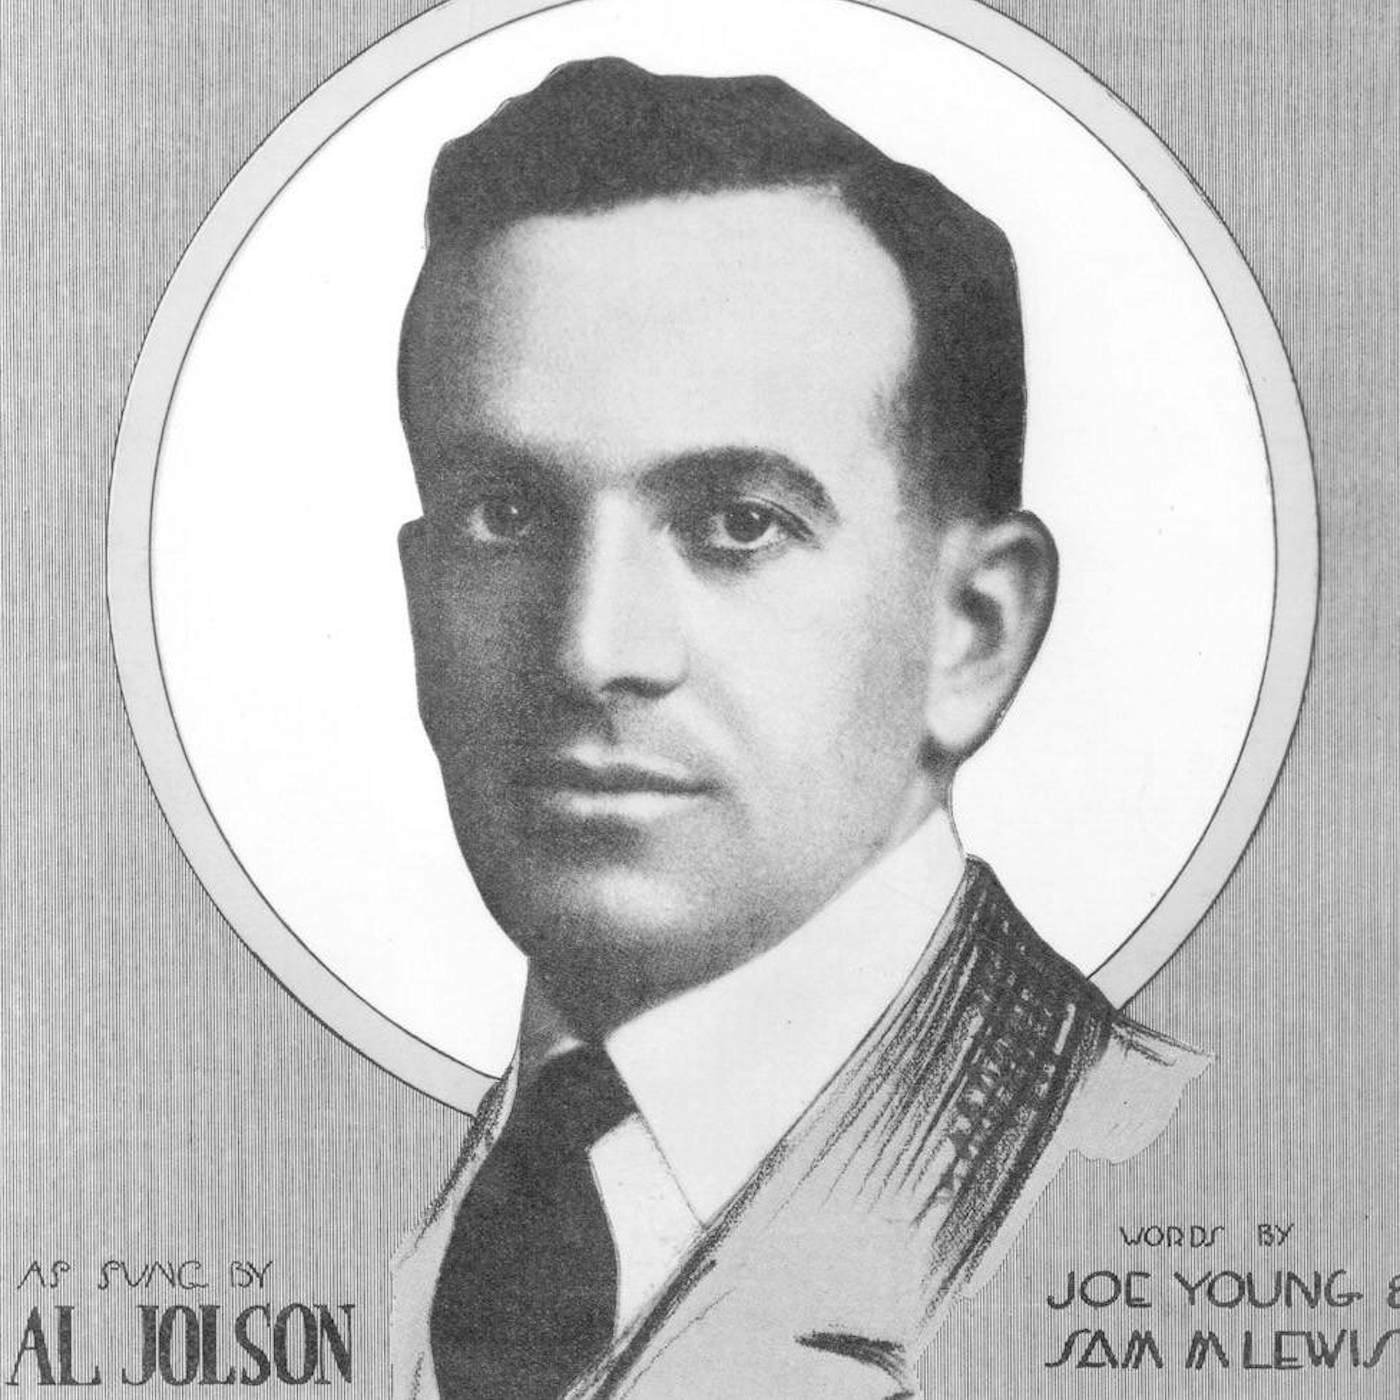 Al Jolson